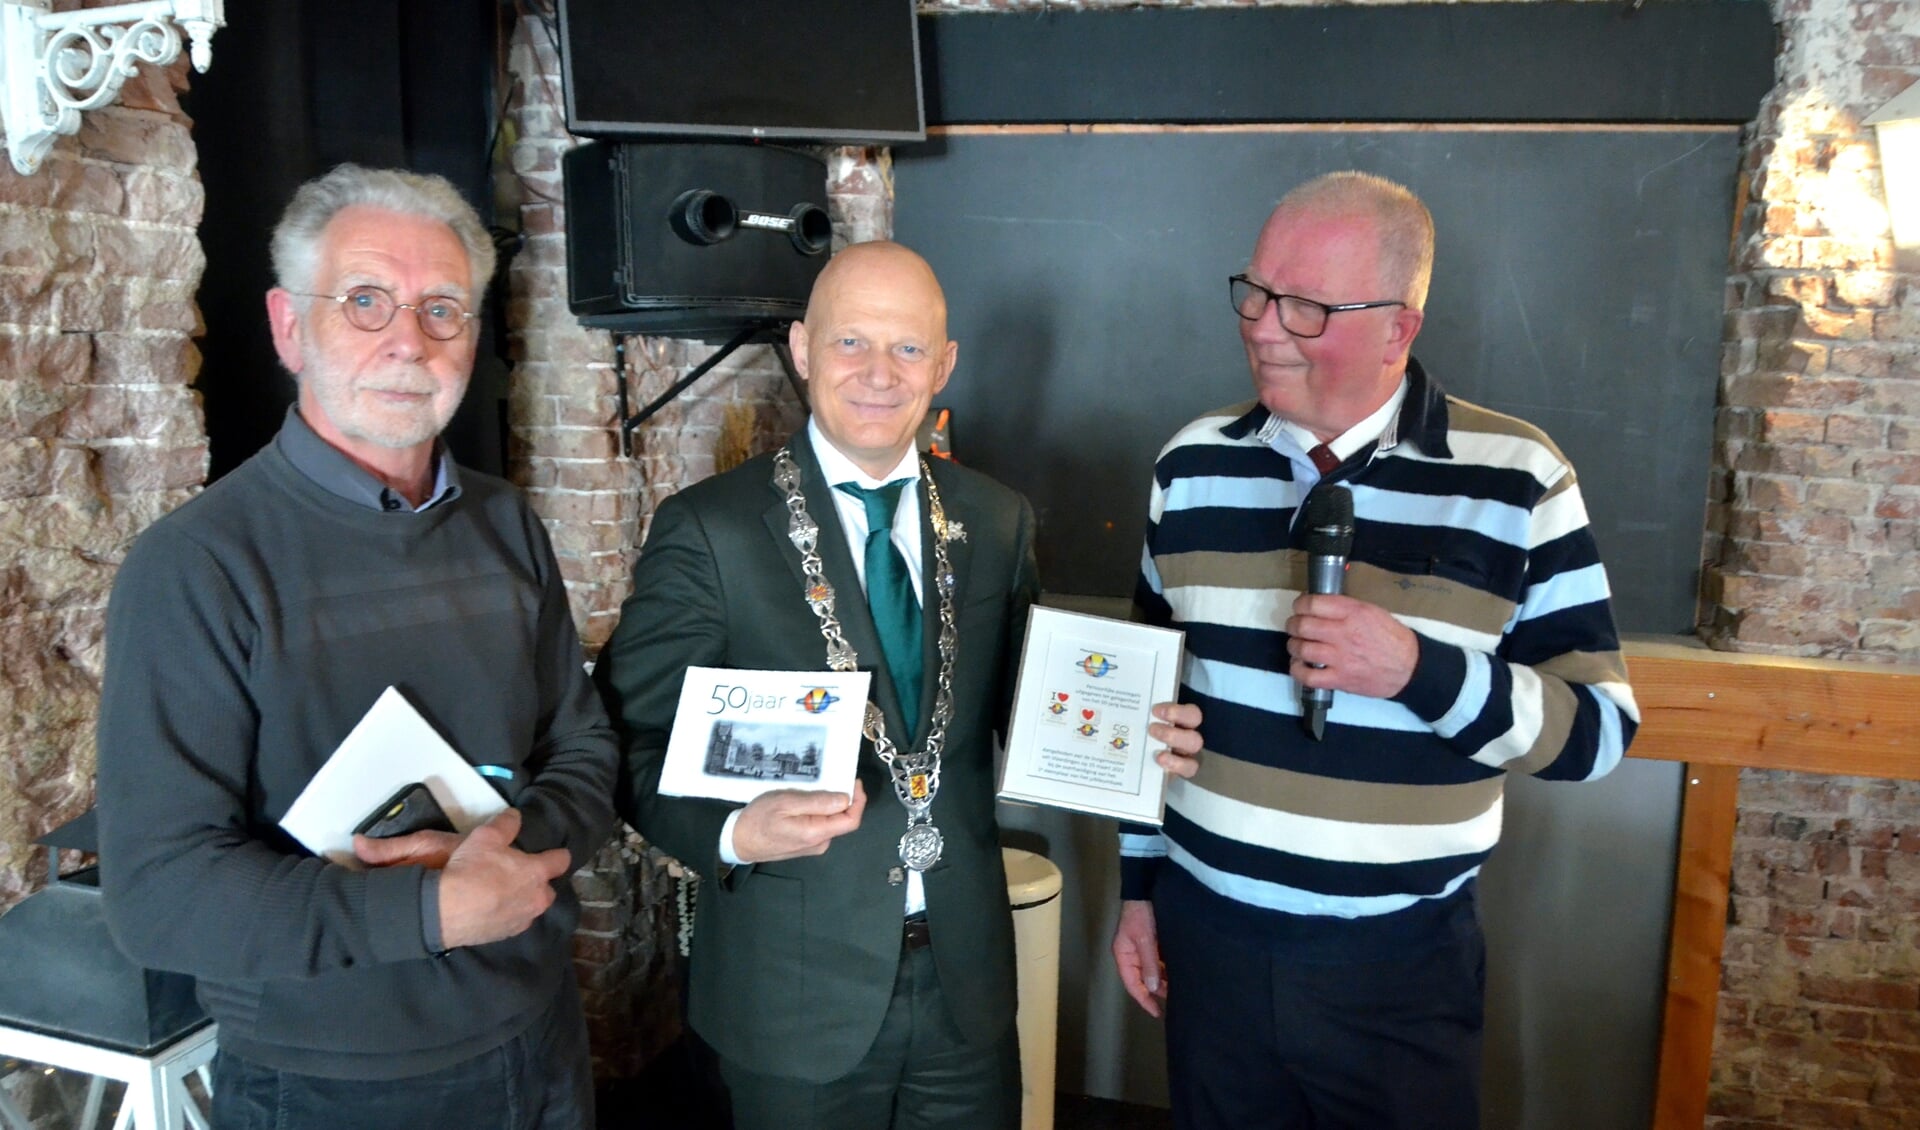 Fotomoment na uitreiking 1e exemplaar jubileumboek. Van links van rechts Guus de Ruiter, burgemeester Bert Wijbenga en voorzitter Wim den Boogert.